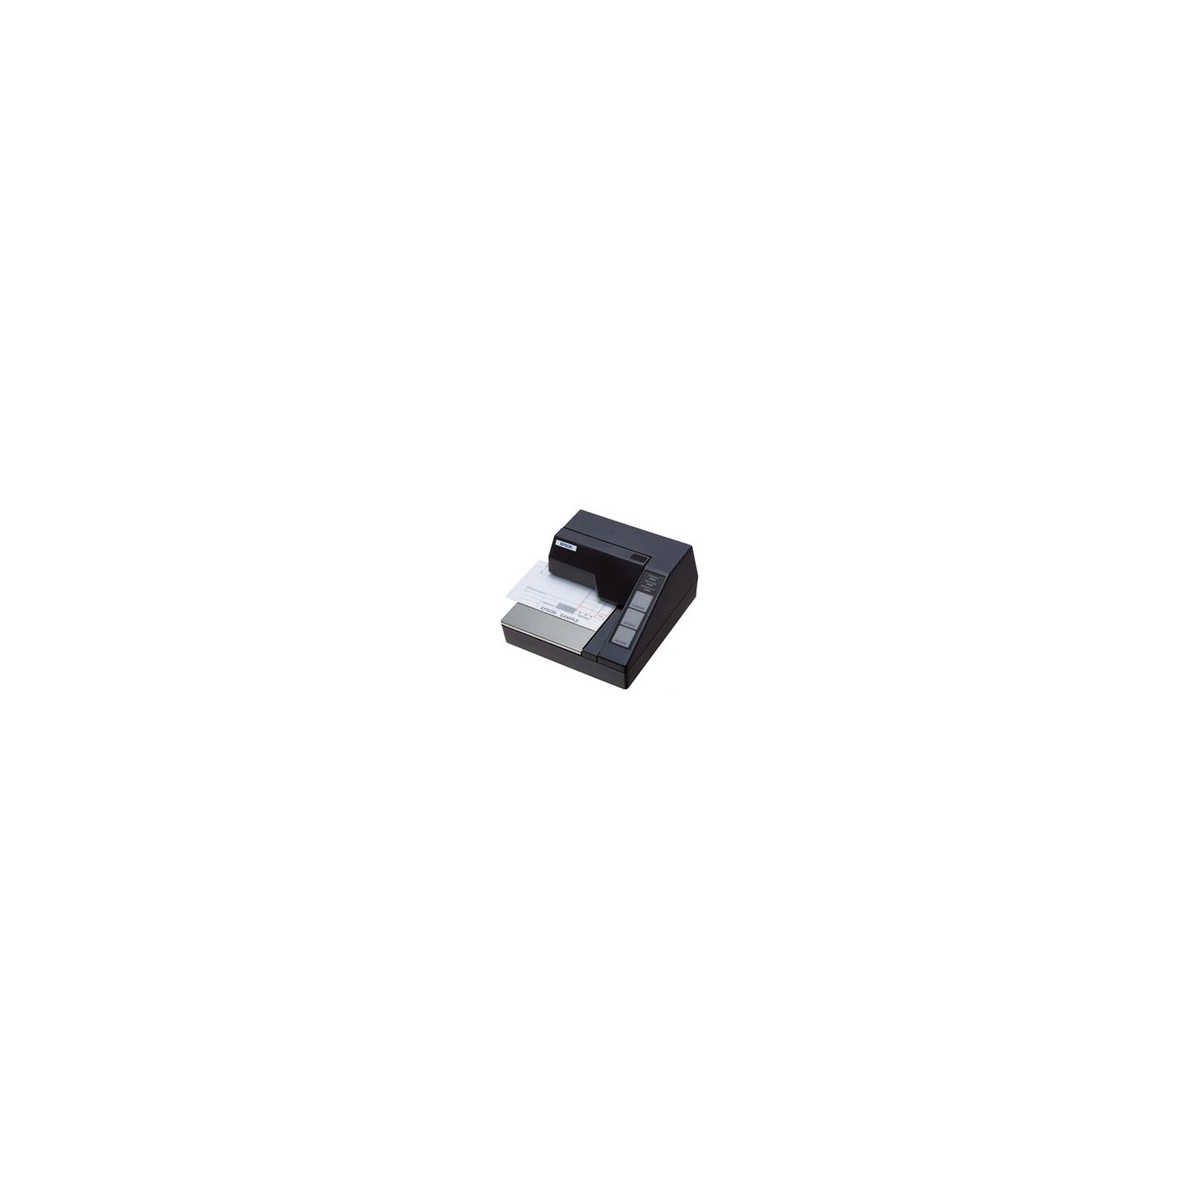 Epson TM-U295 (292LG): Serial - w-o PS - EDG - Wired - Black